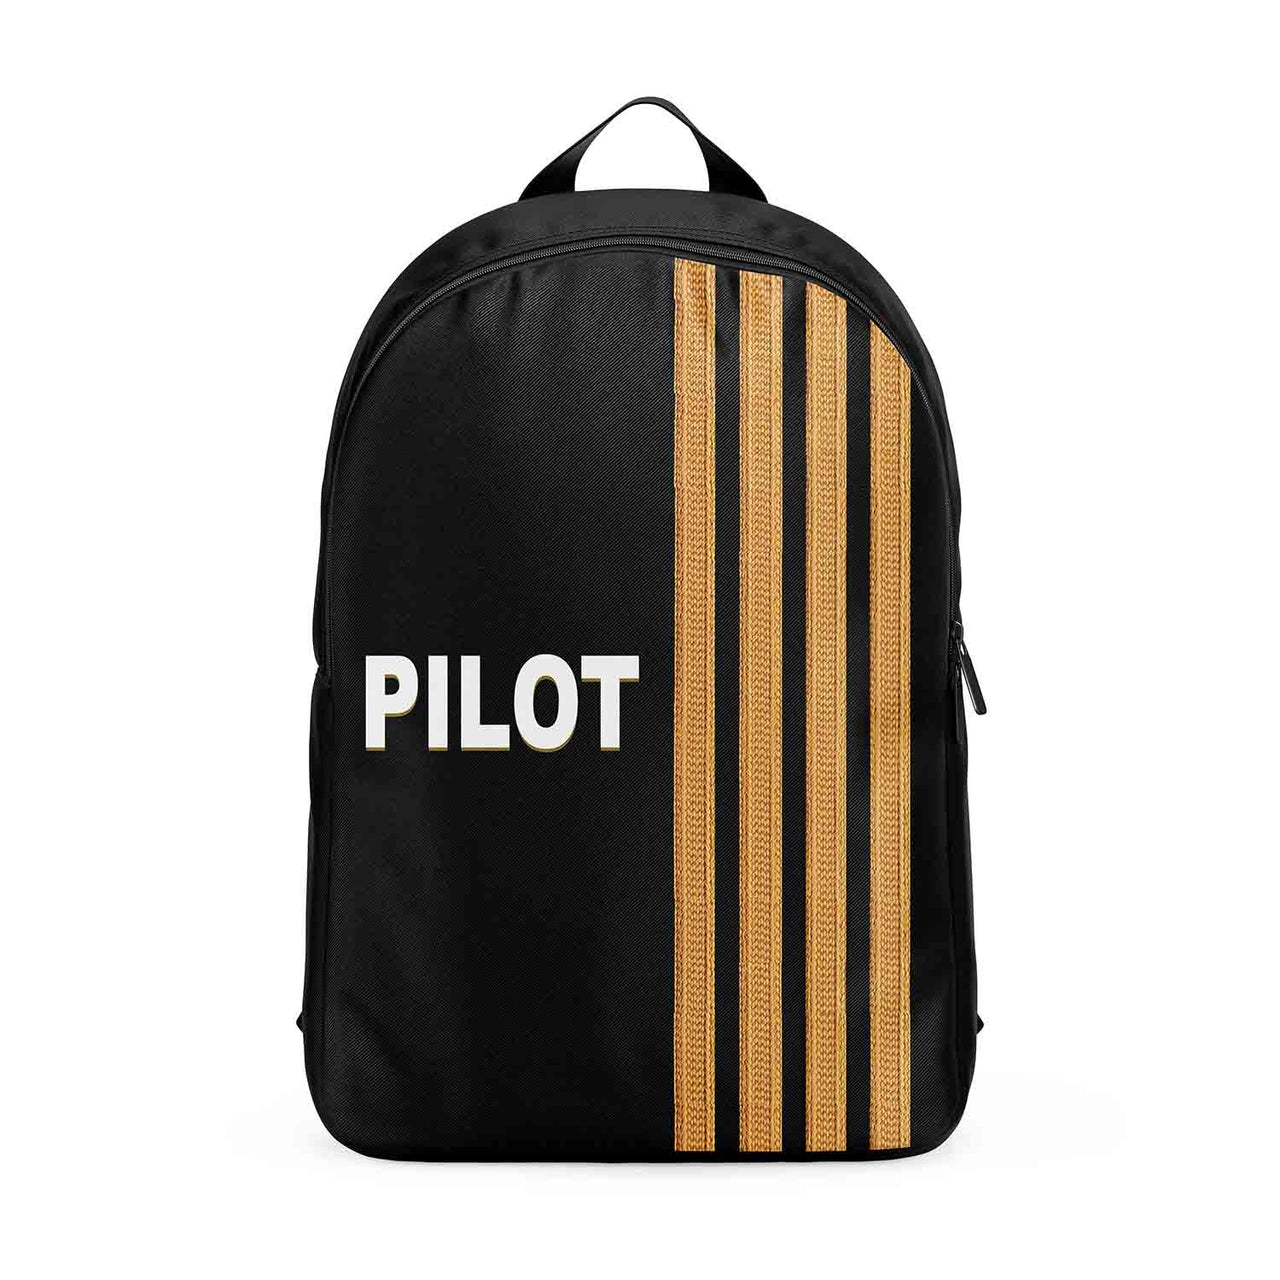 PILOT & Epaulettes 4 Lines Designed Backpacks